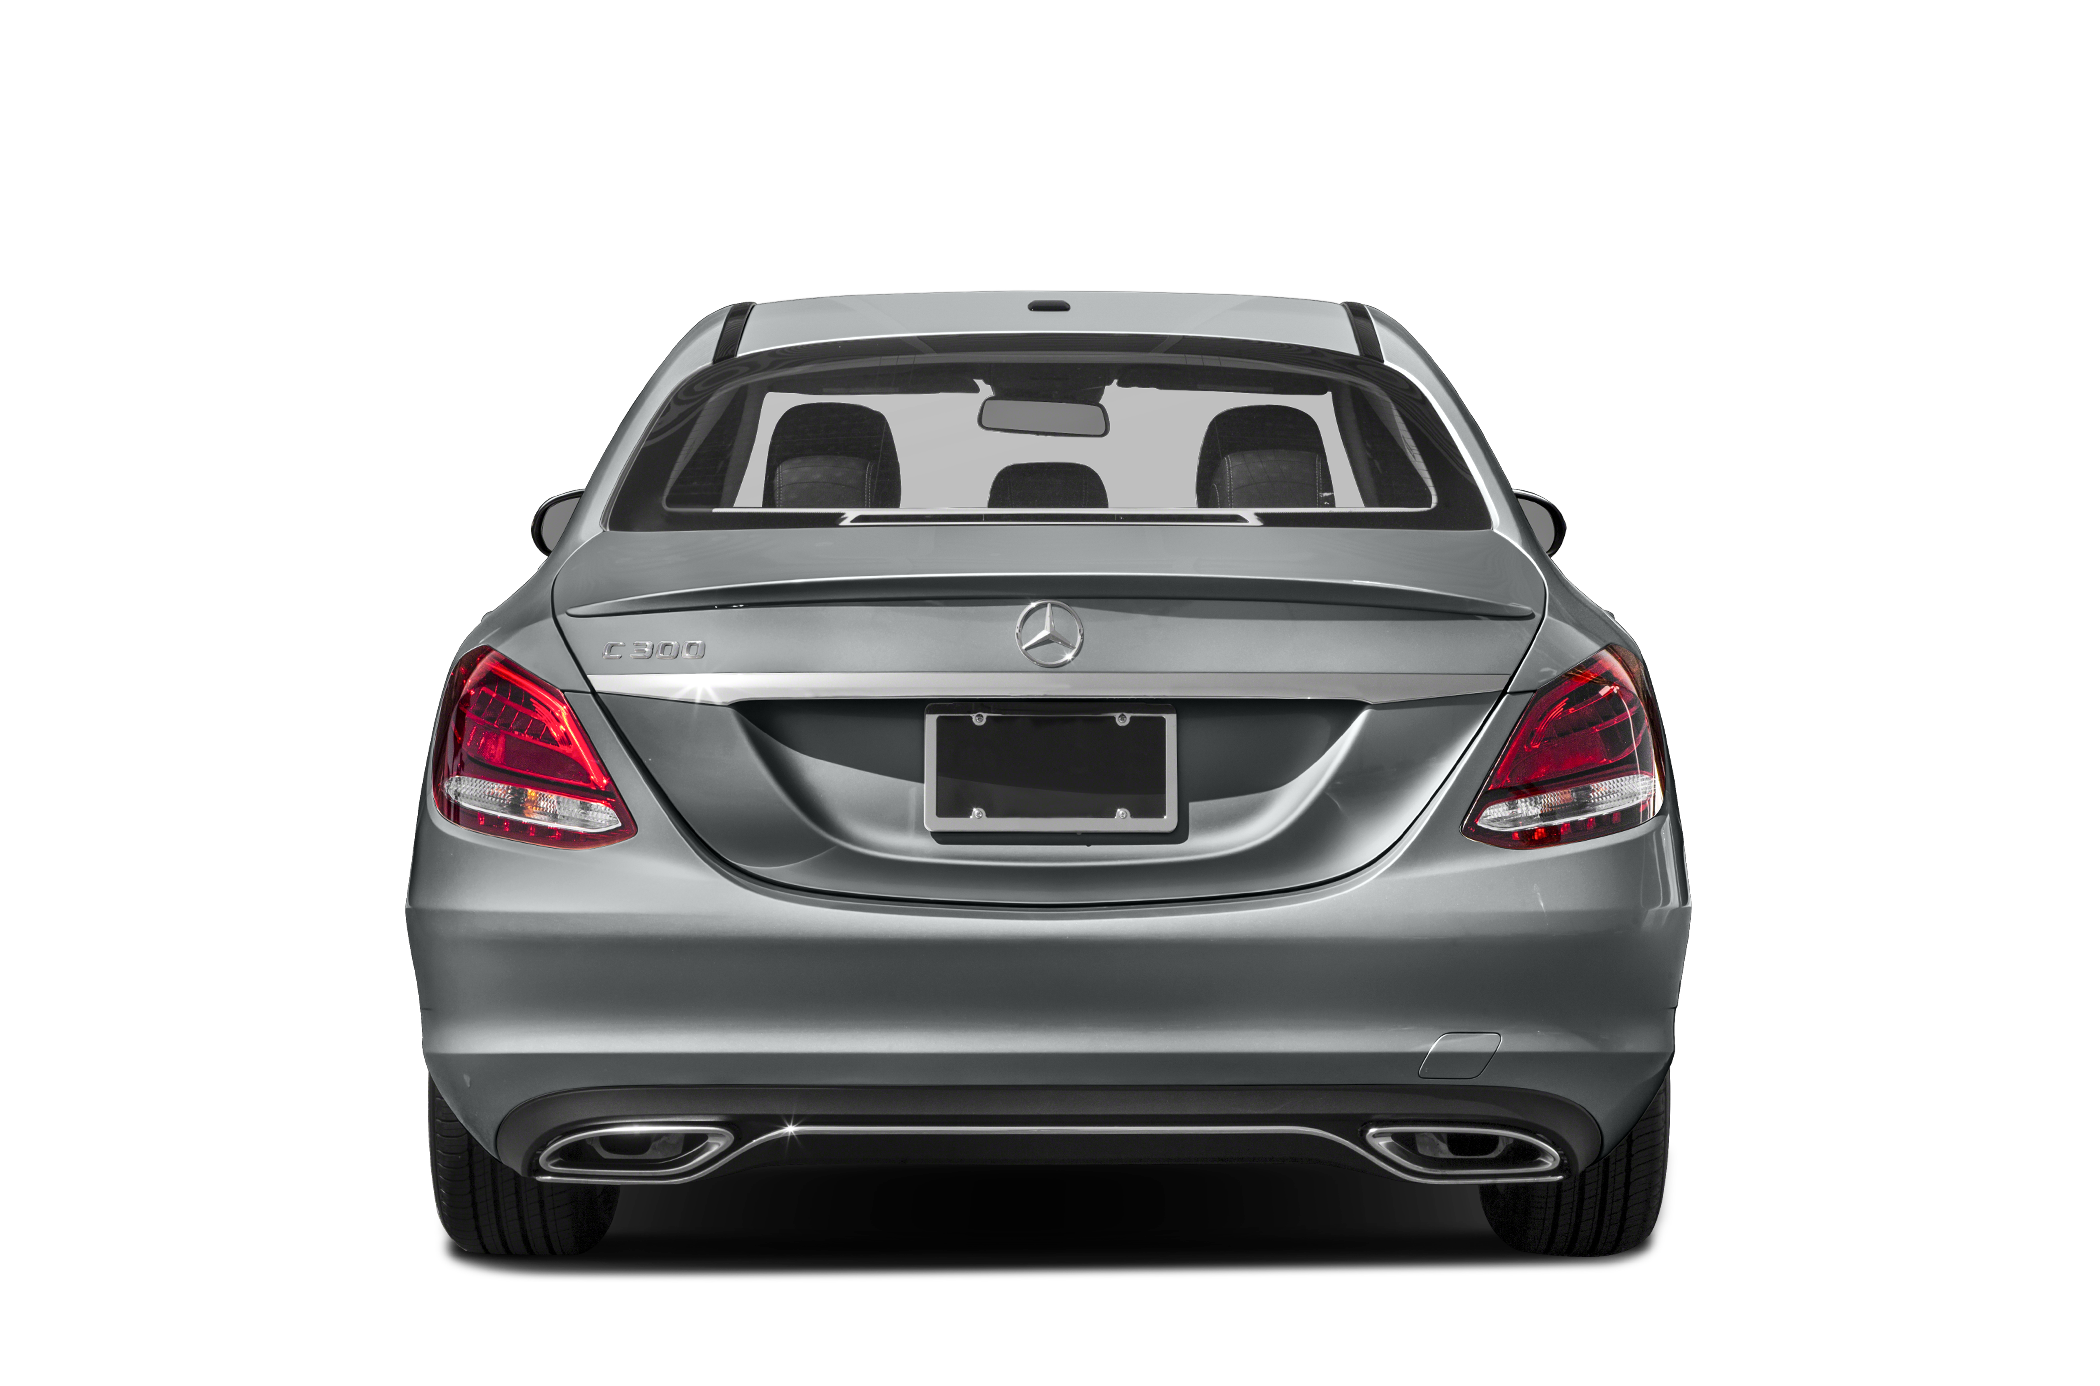 2015 Mercedes-Benz C-Class